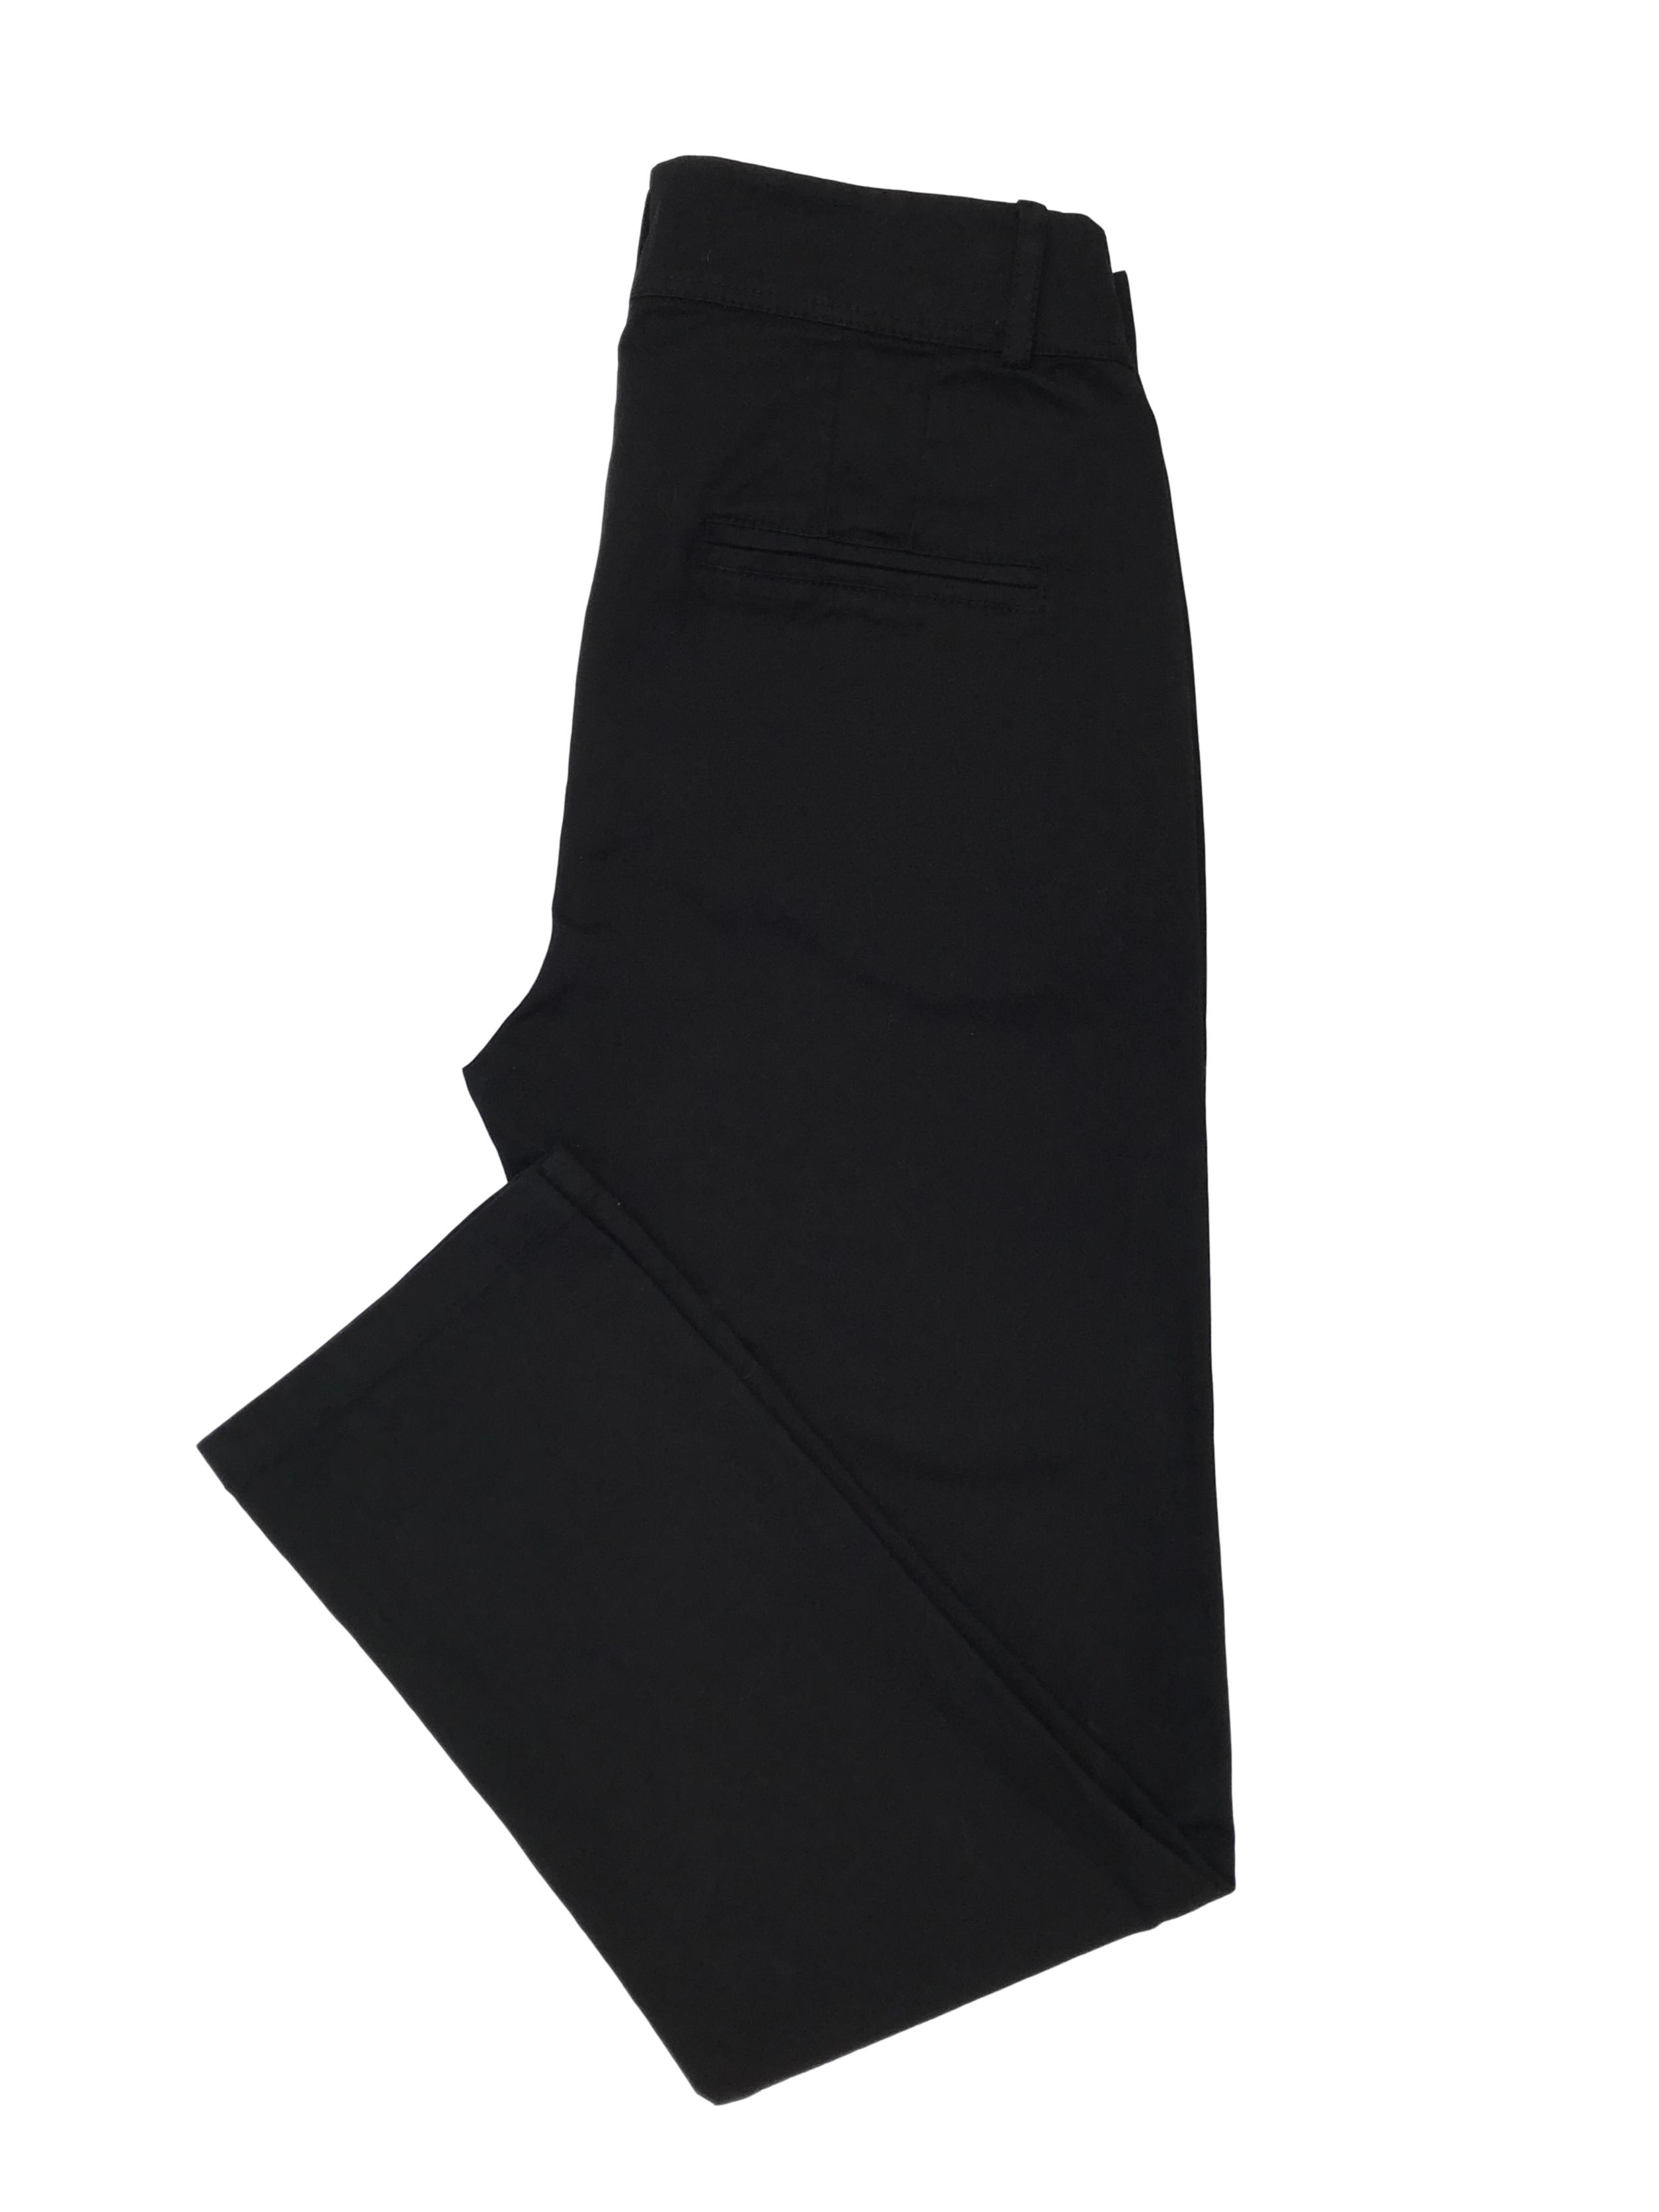 Pantalón de drill negro 94% algodón, corte slim. Cintura 70cm